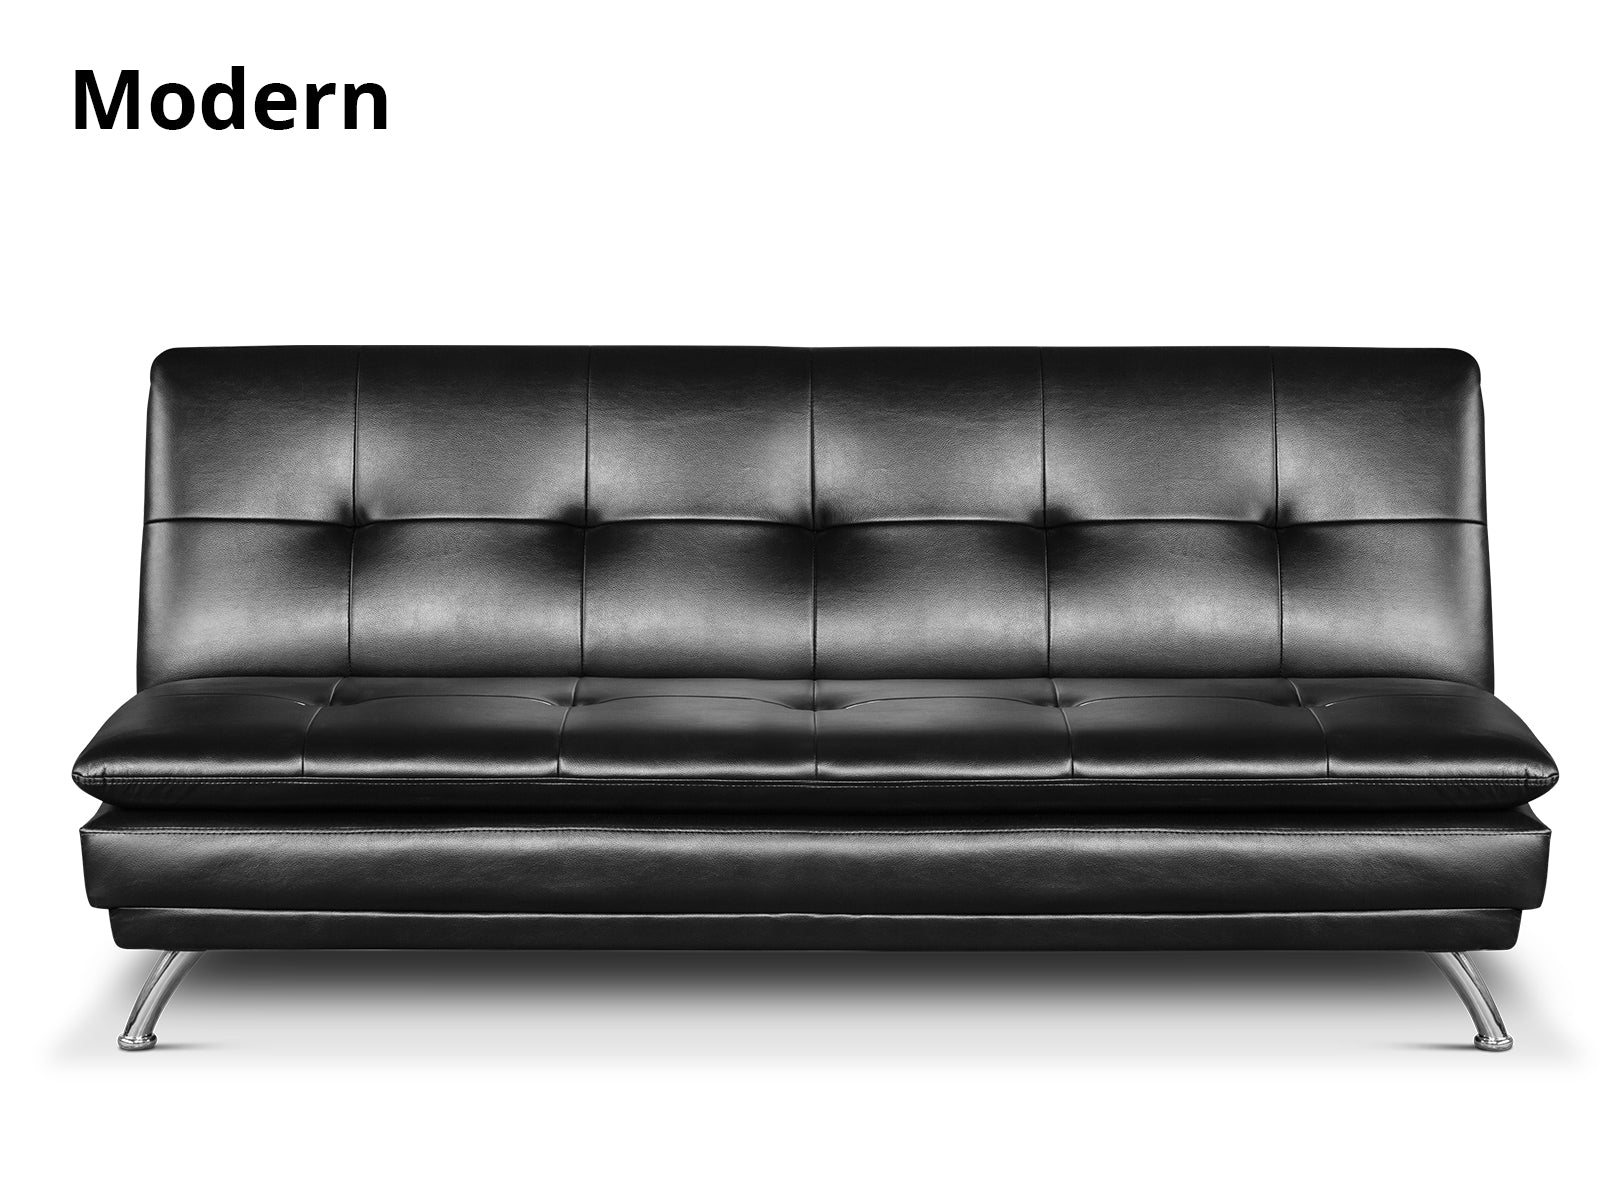 Krom Sofa Bed PU Black